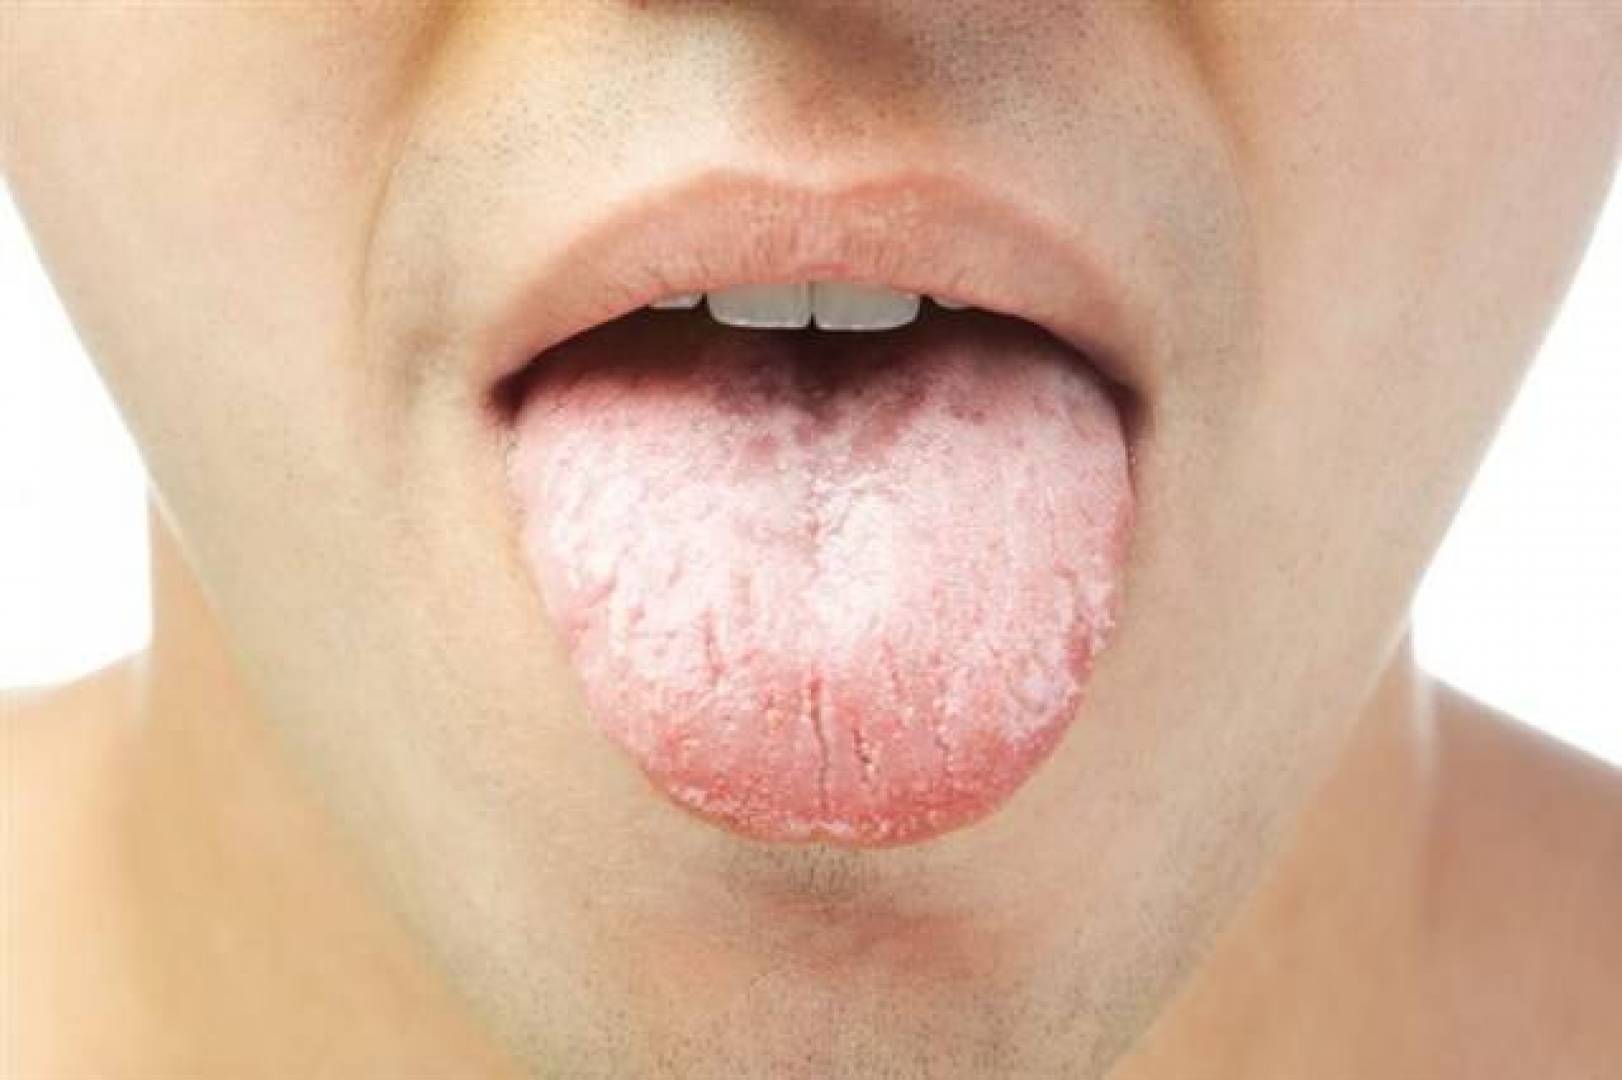 جفاف الفم قد يكون علامة إنذار لمجموعة من الأمراض الخطيرة